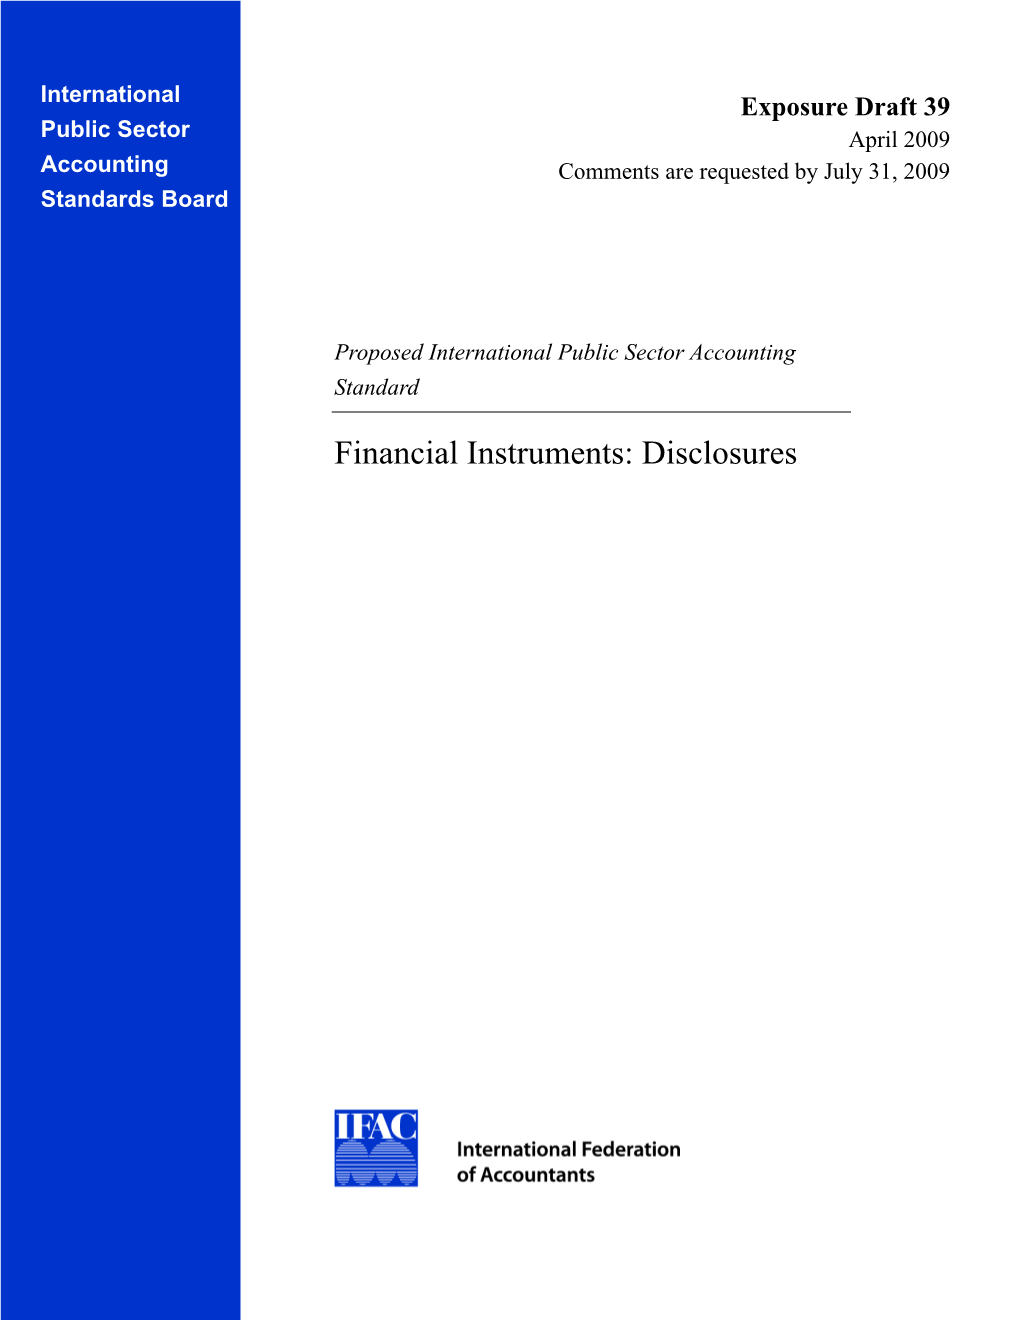 Financial Instruments: Disclosures